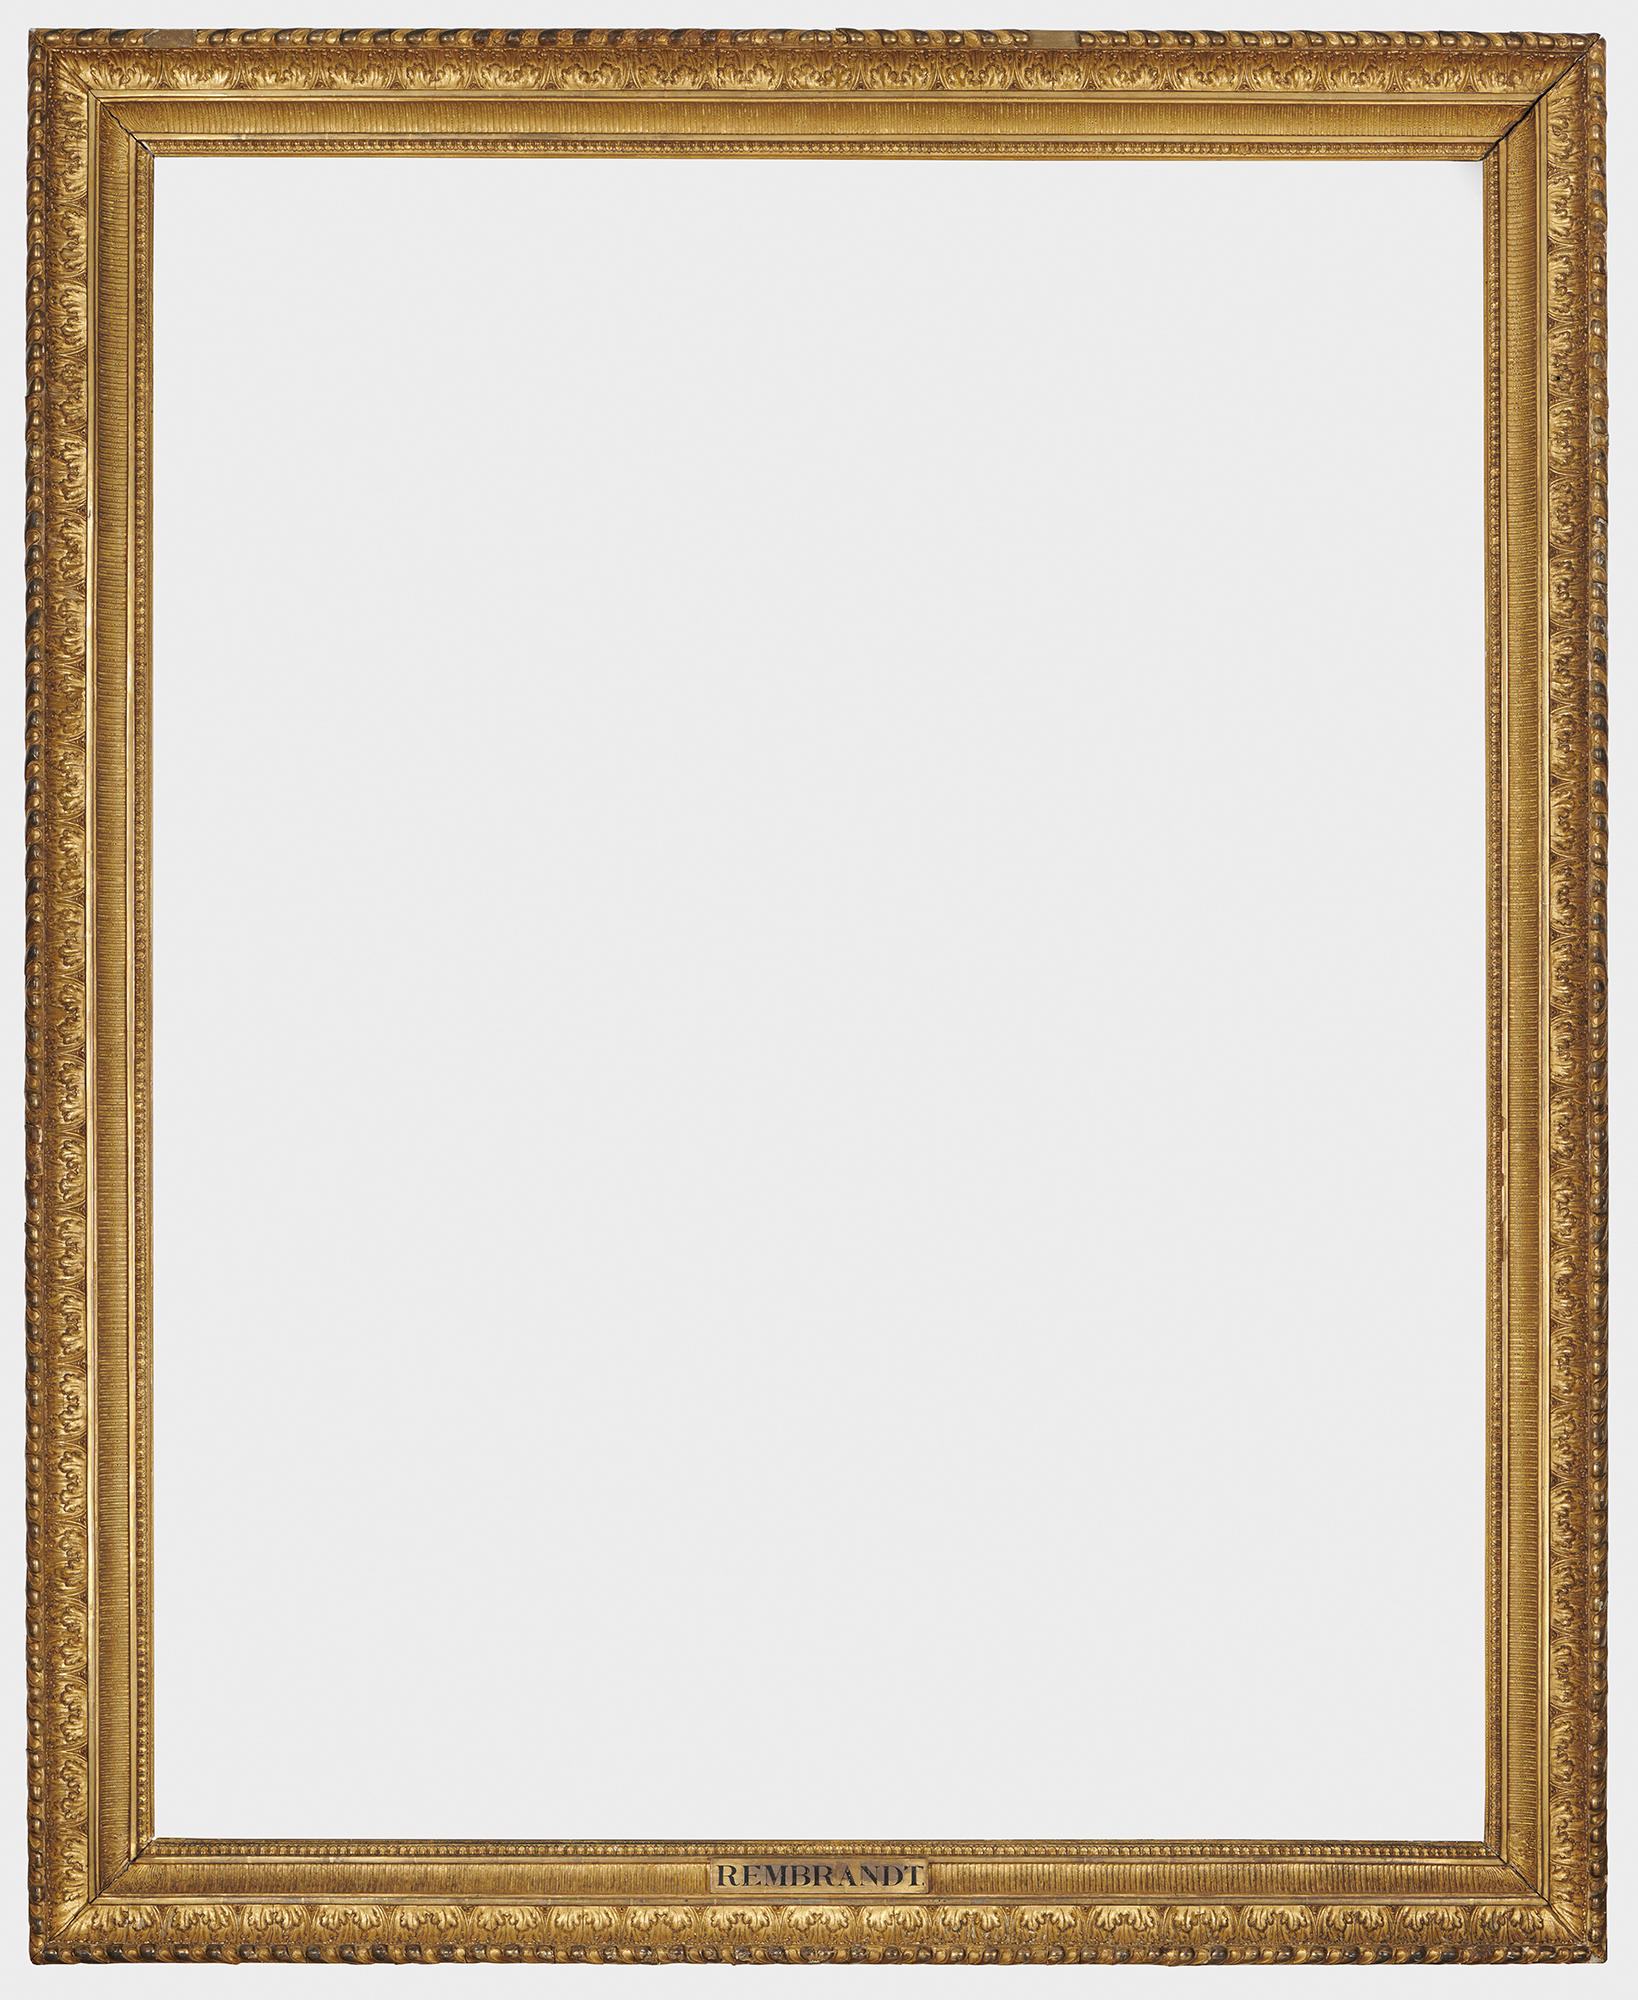 An empty gold frame.